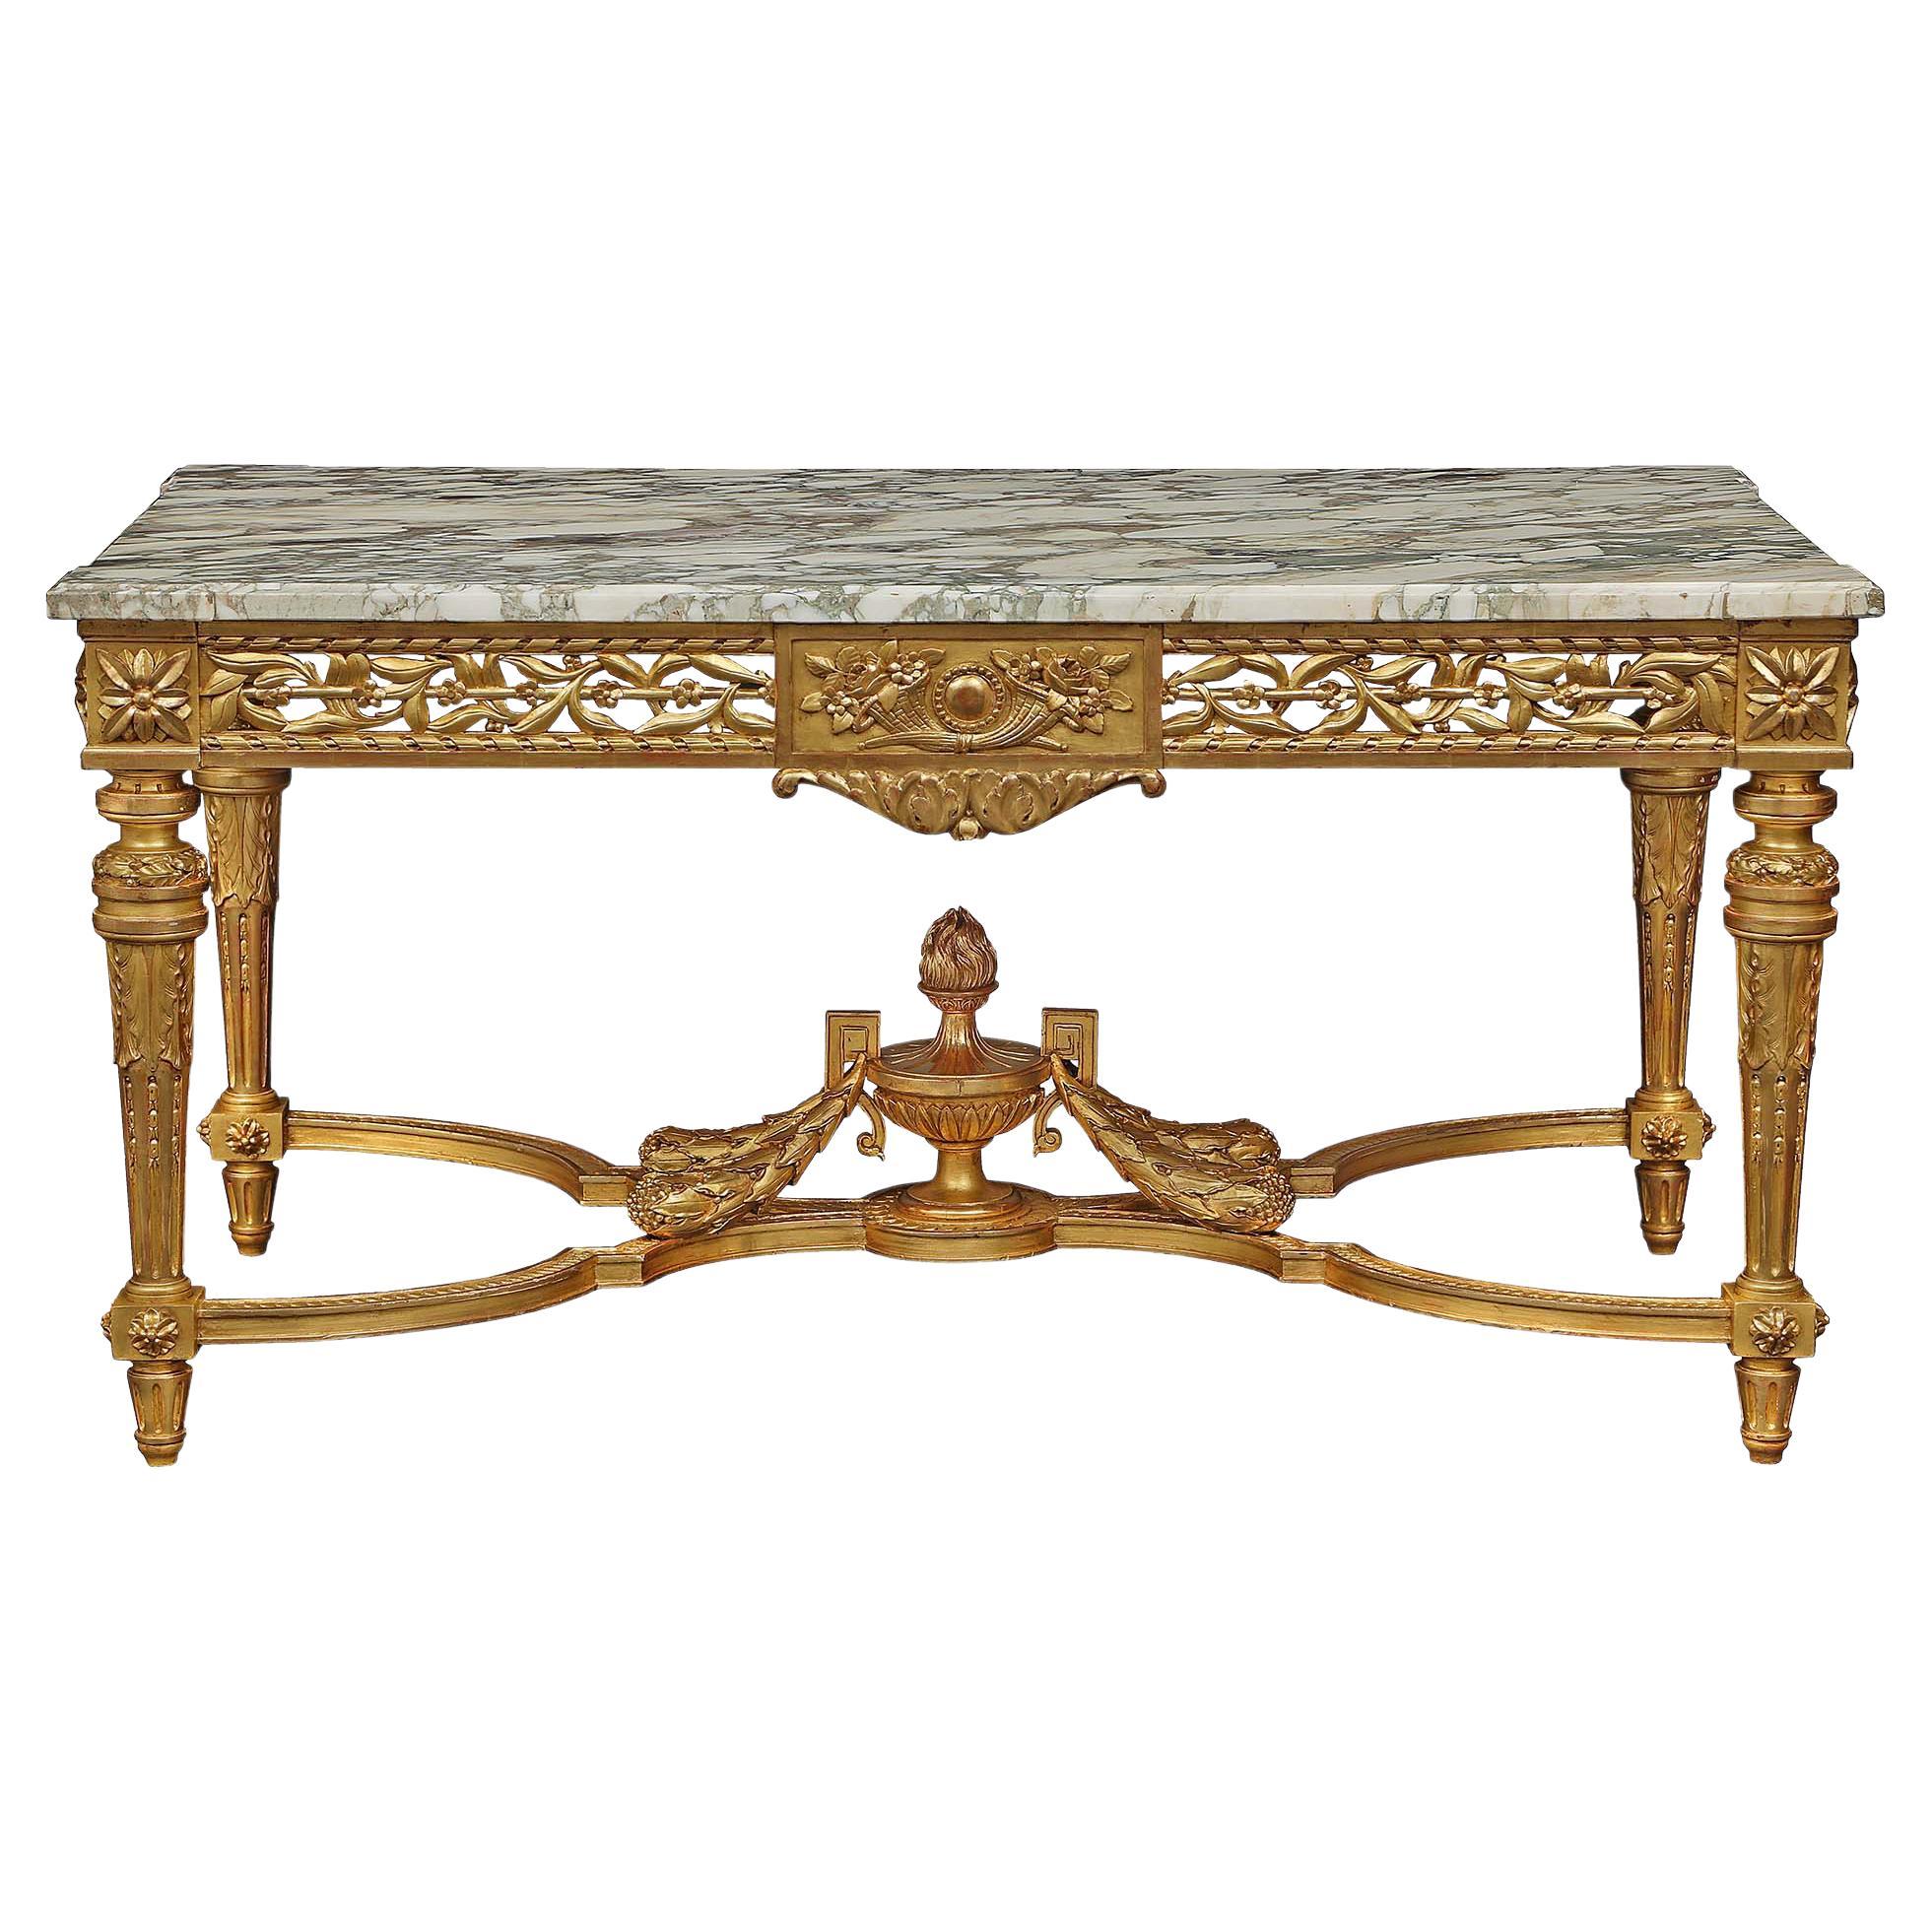 Table centrale française de style Louis XVI du 19ème siècle en bois doré et marbre